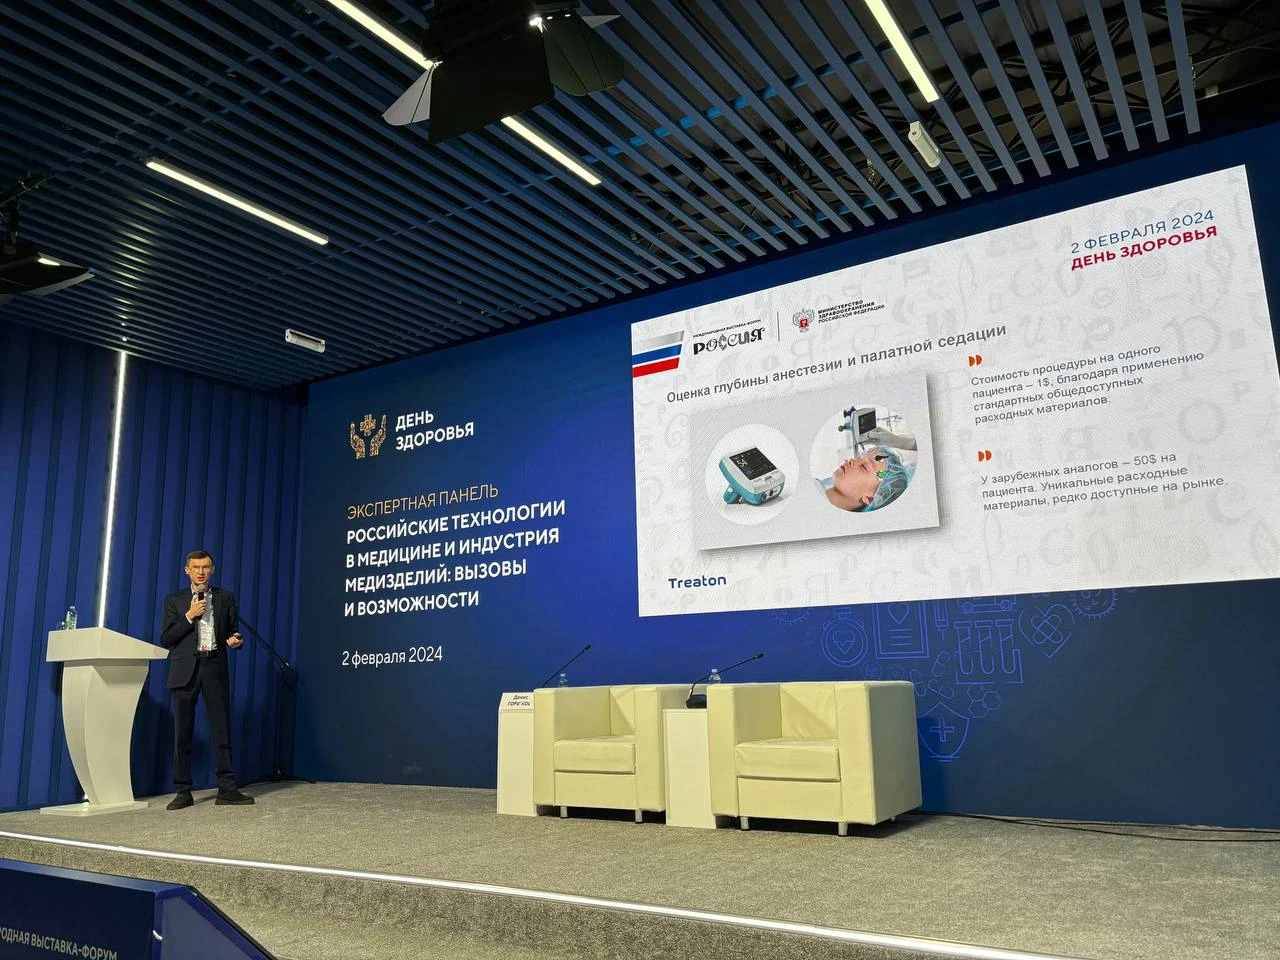 Наращивание производства, нейропротезирование и инновационные аппараты ИВЛ: на Международной выставке-форуме "Россия" эксперты обсудили будущее индустрии медизделий и отечественных медицинских технологий